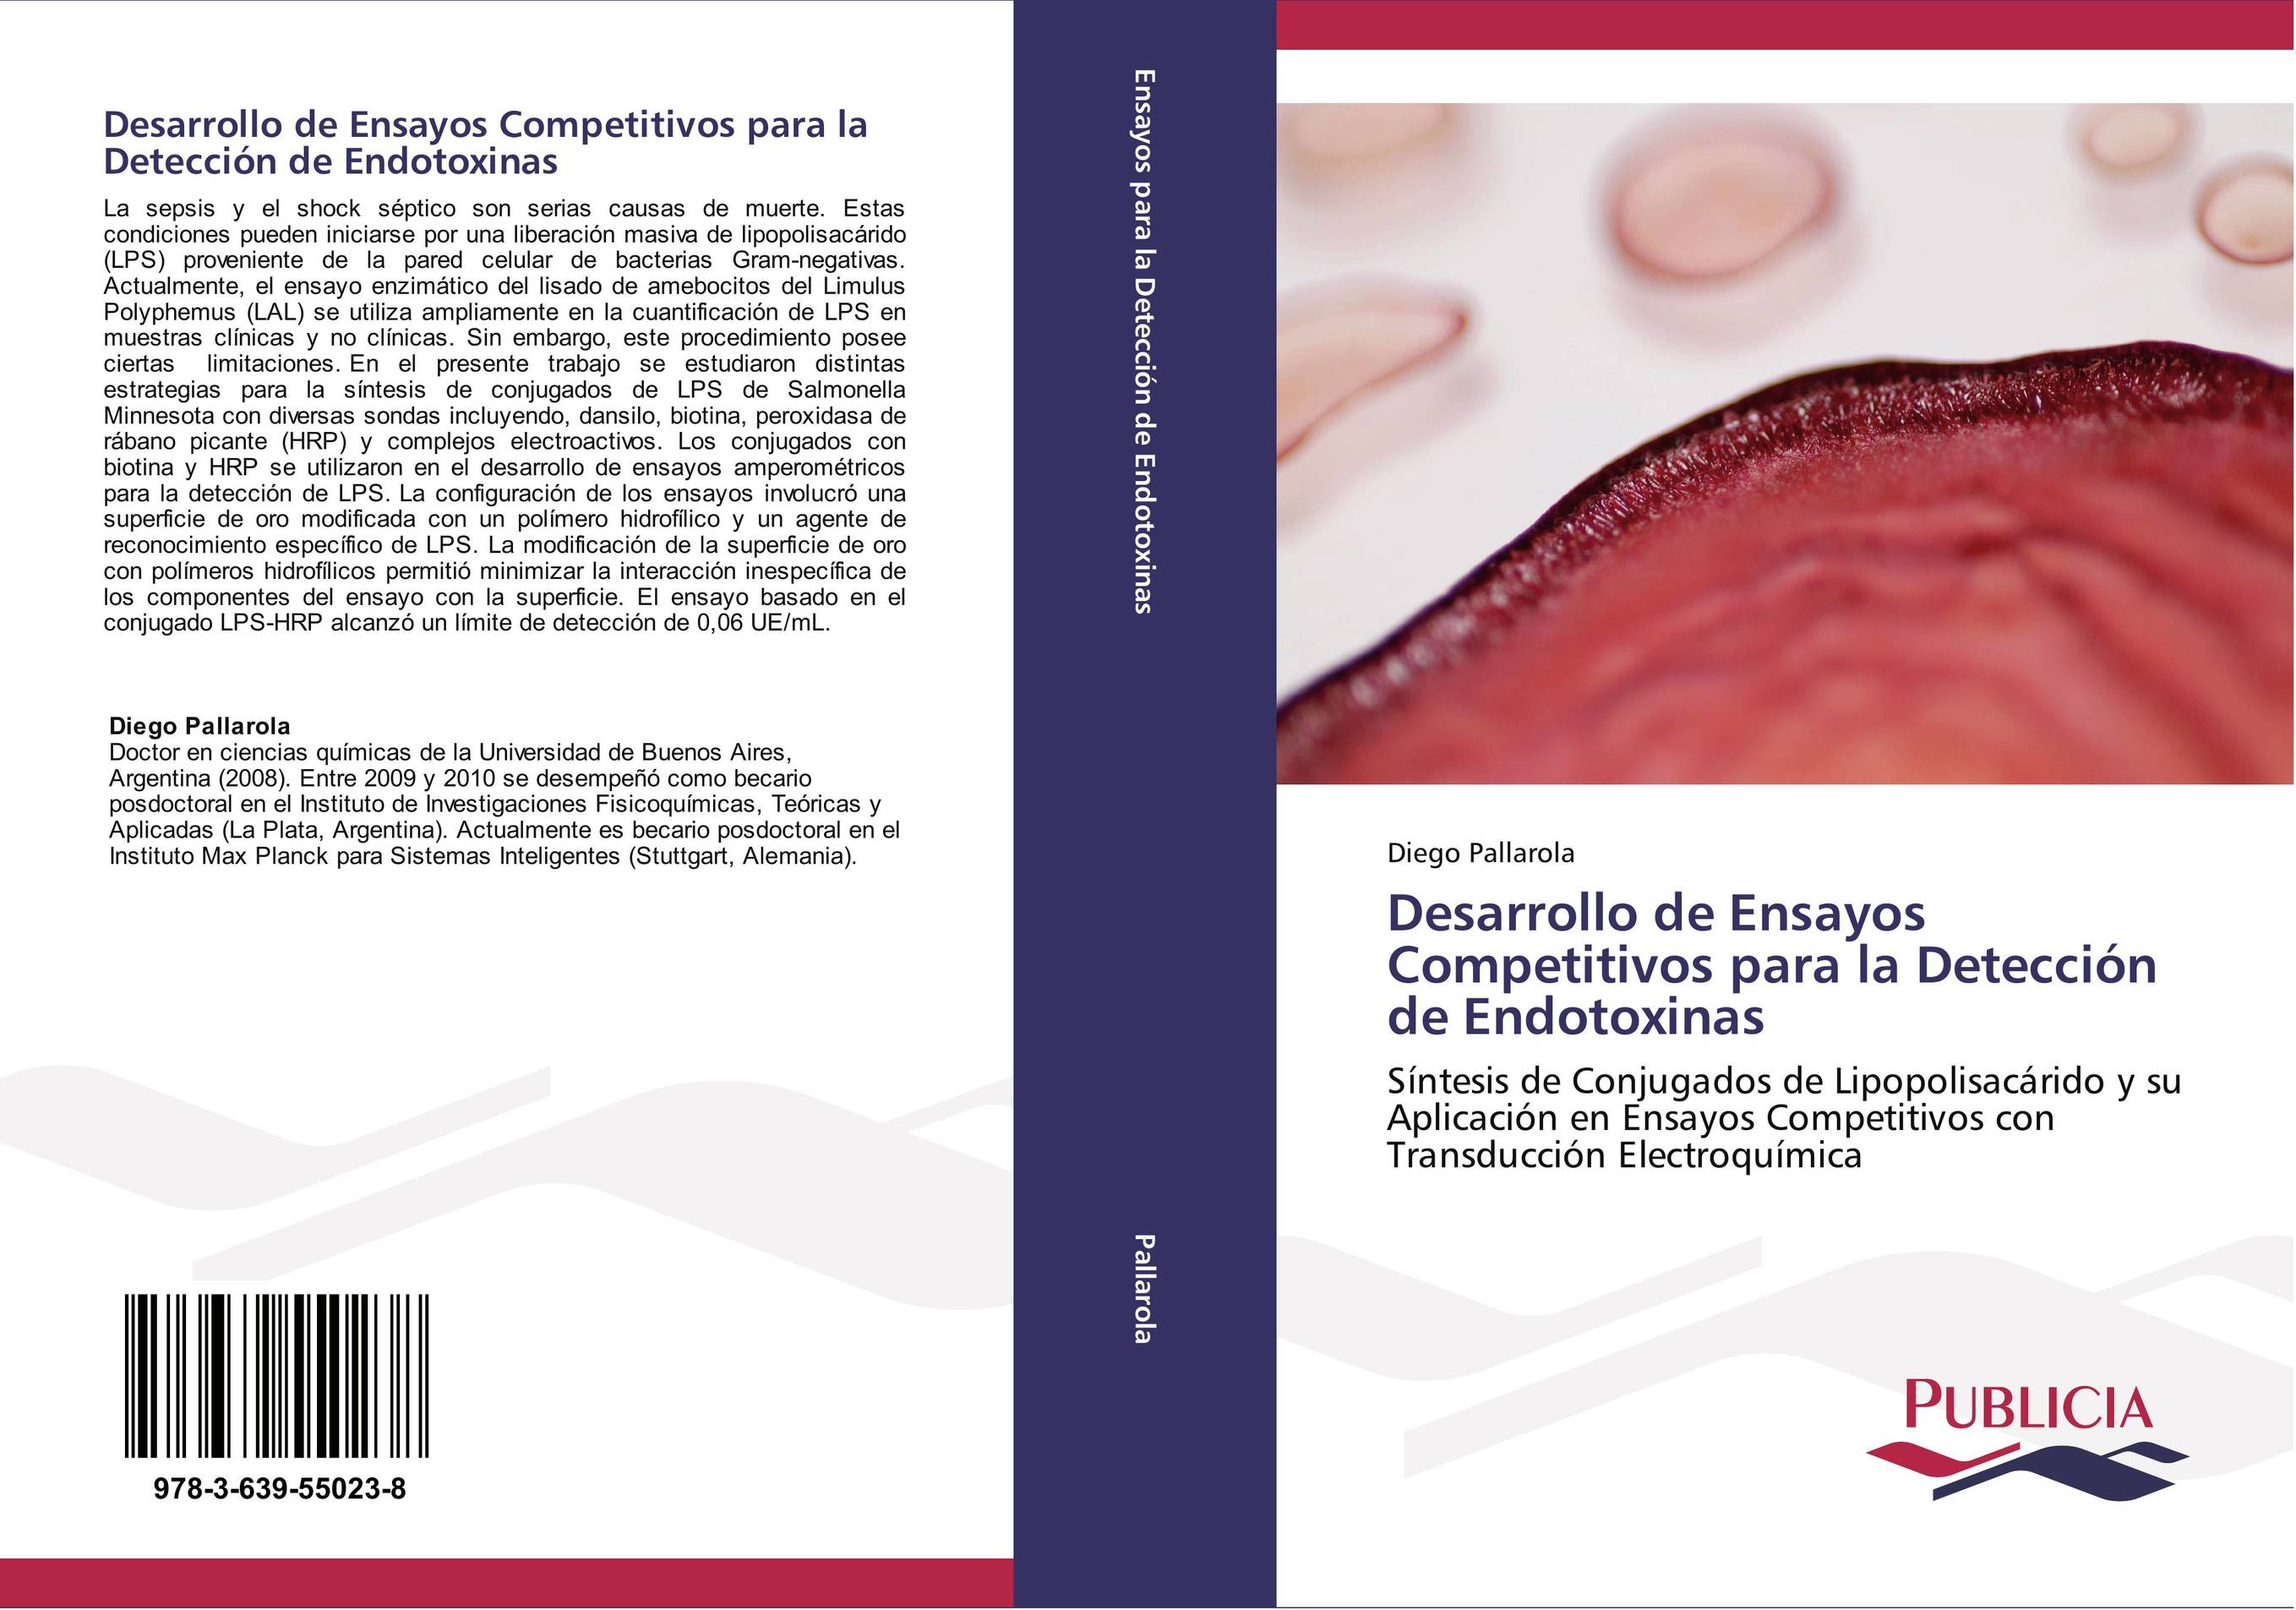 Desarrollo de Ensayos Competitivos para la Detección de Endotoxinas